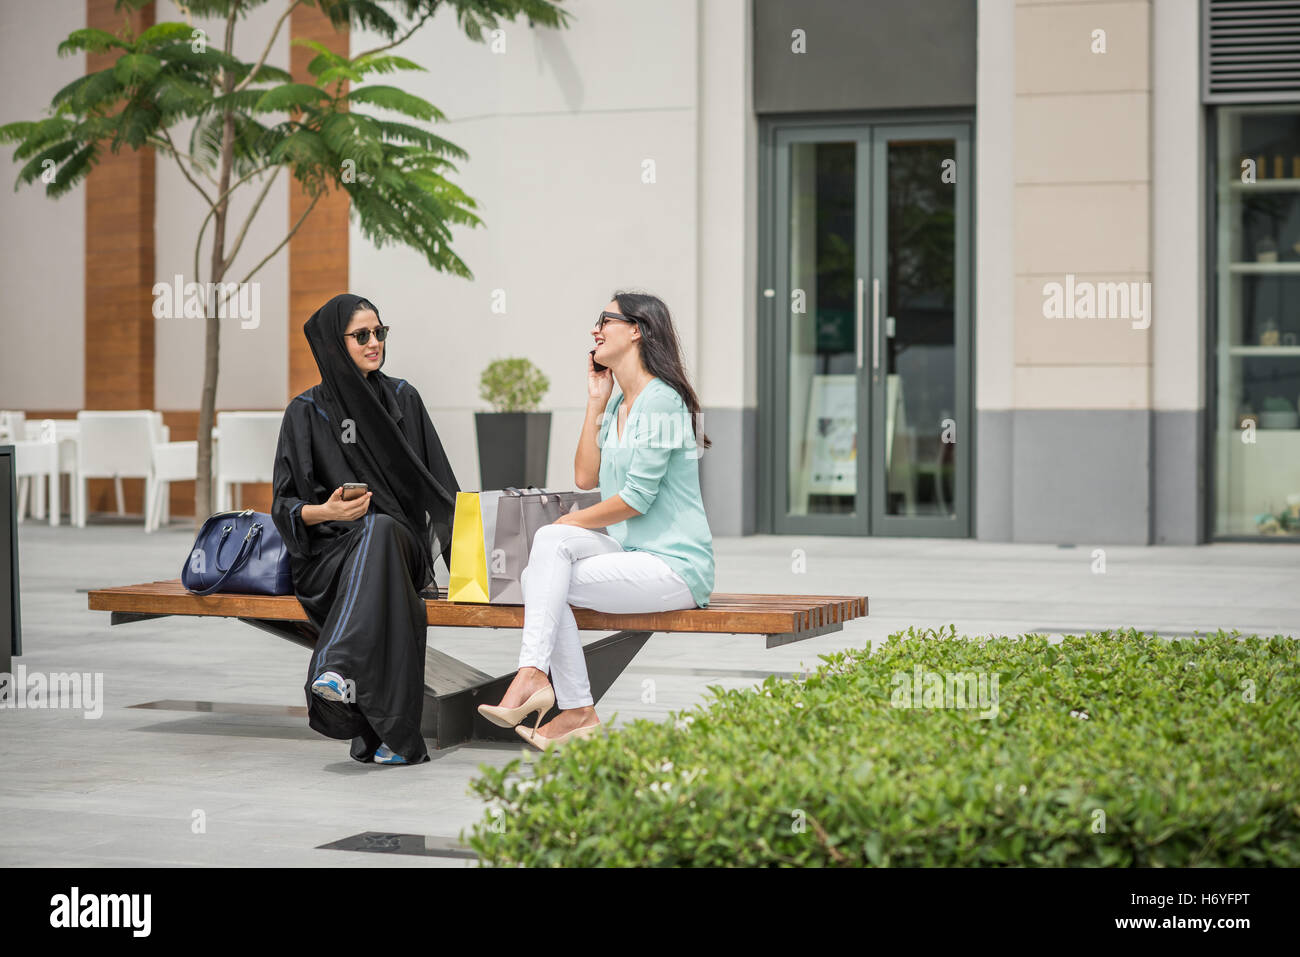 Giovani medio orientale donna che indossa abbigliamento tradizionale seduta sul banco di lavoro con amico femmina, Dubai, Emirati Arabi Uniti Foto Stock